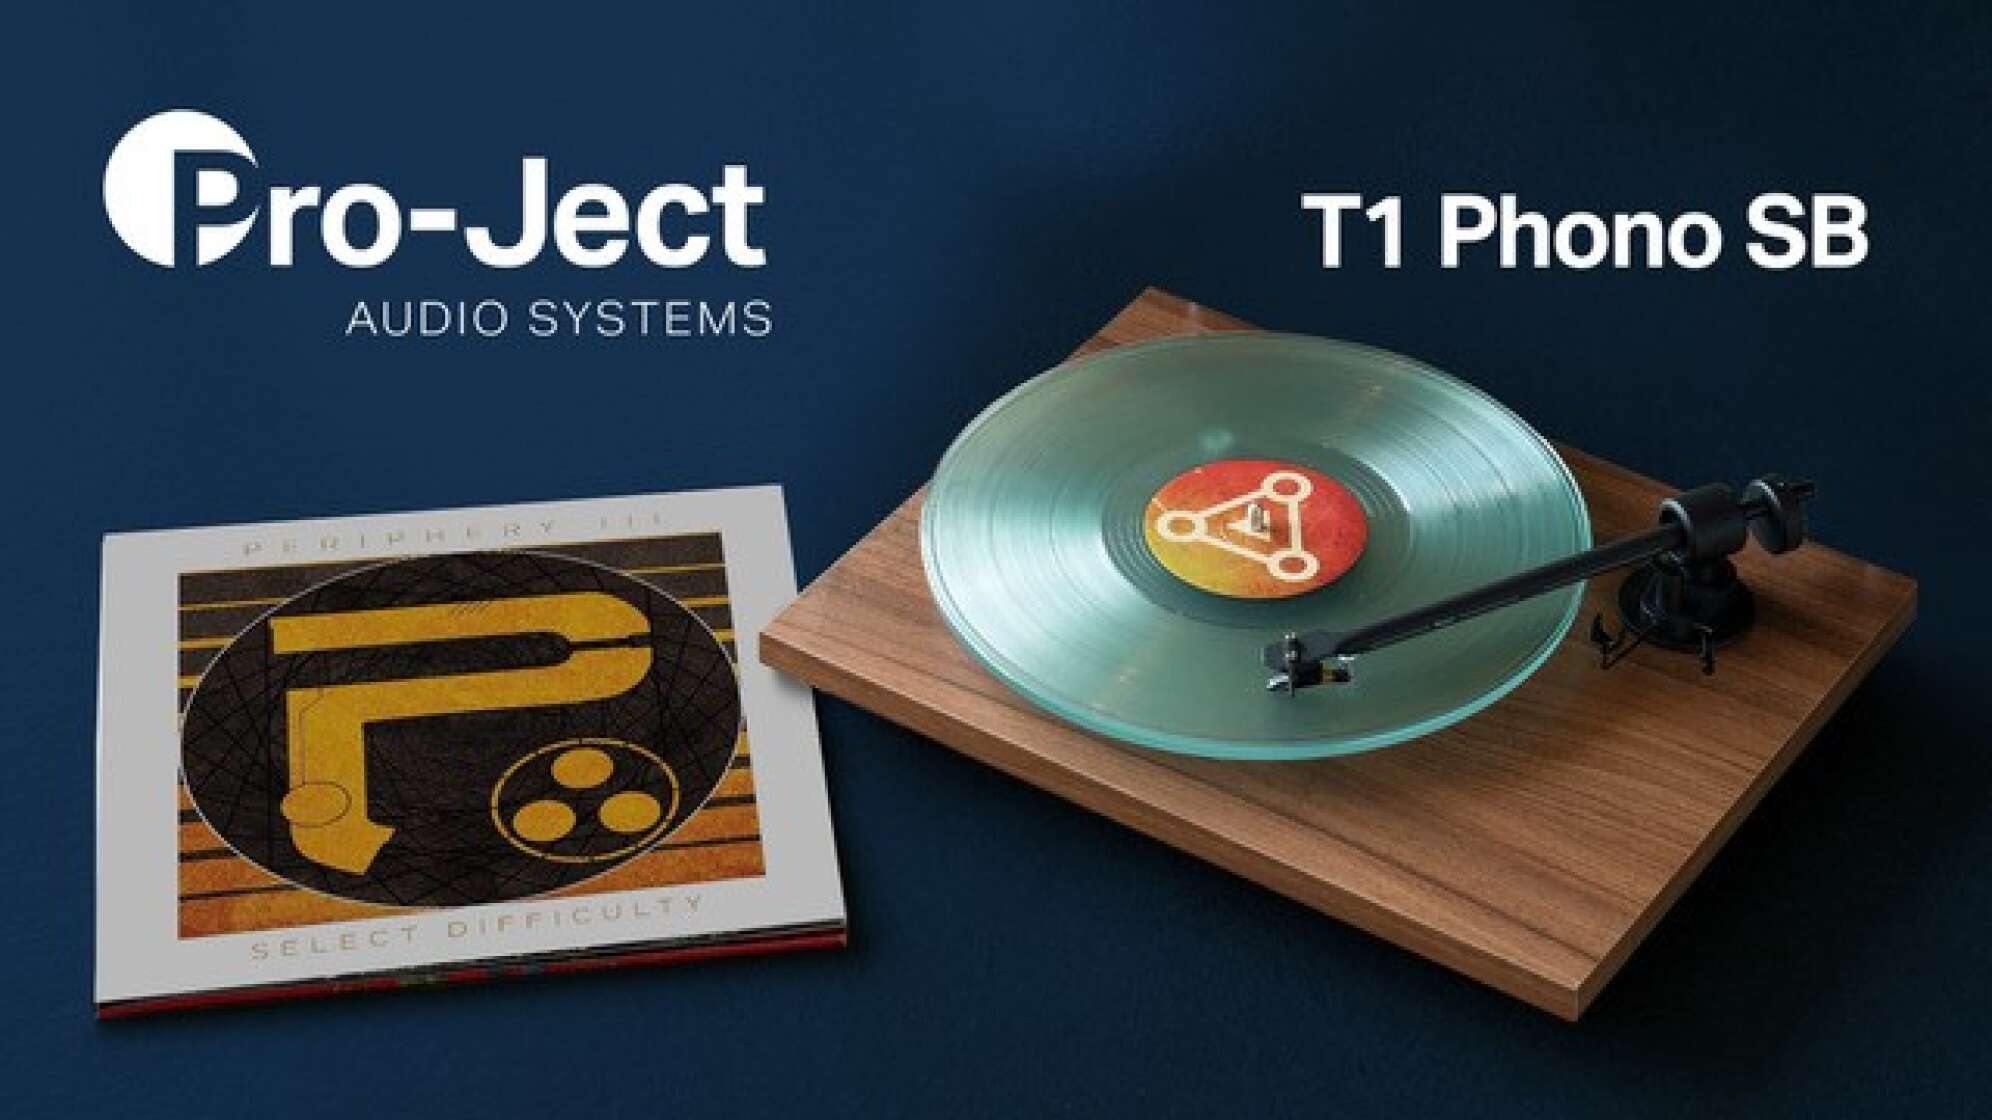 Produktbild des Plattenspielers T1 Phono SB von Pro-ject Audio Systems